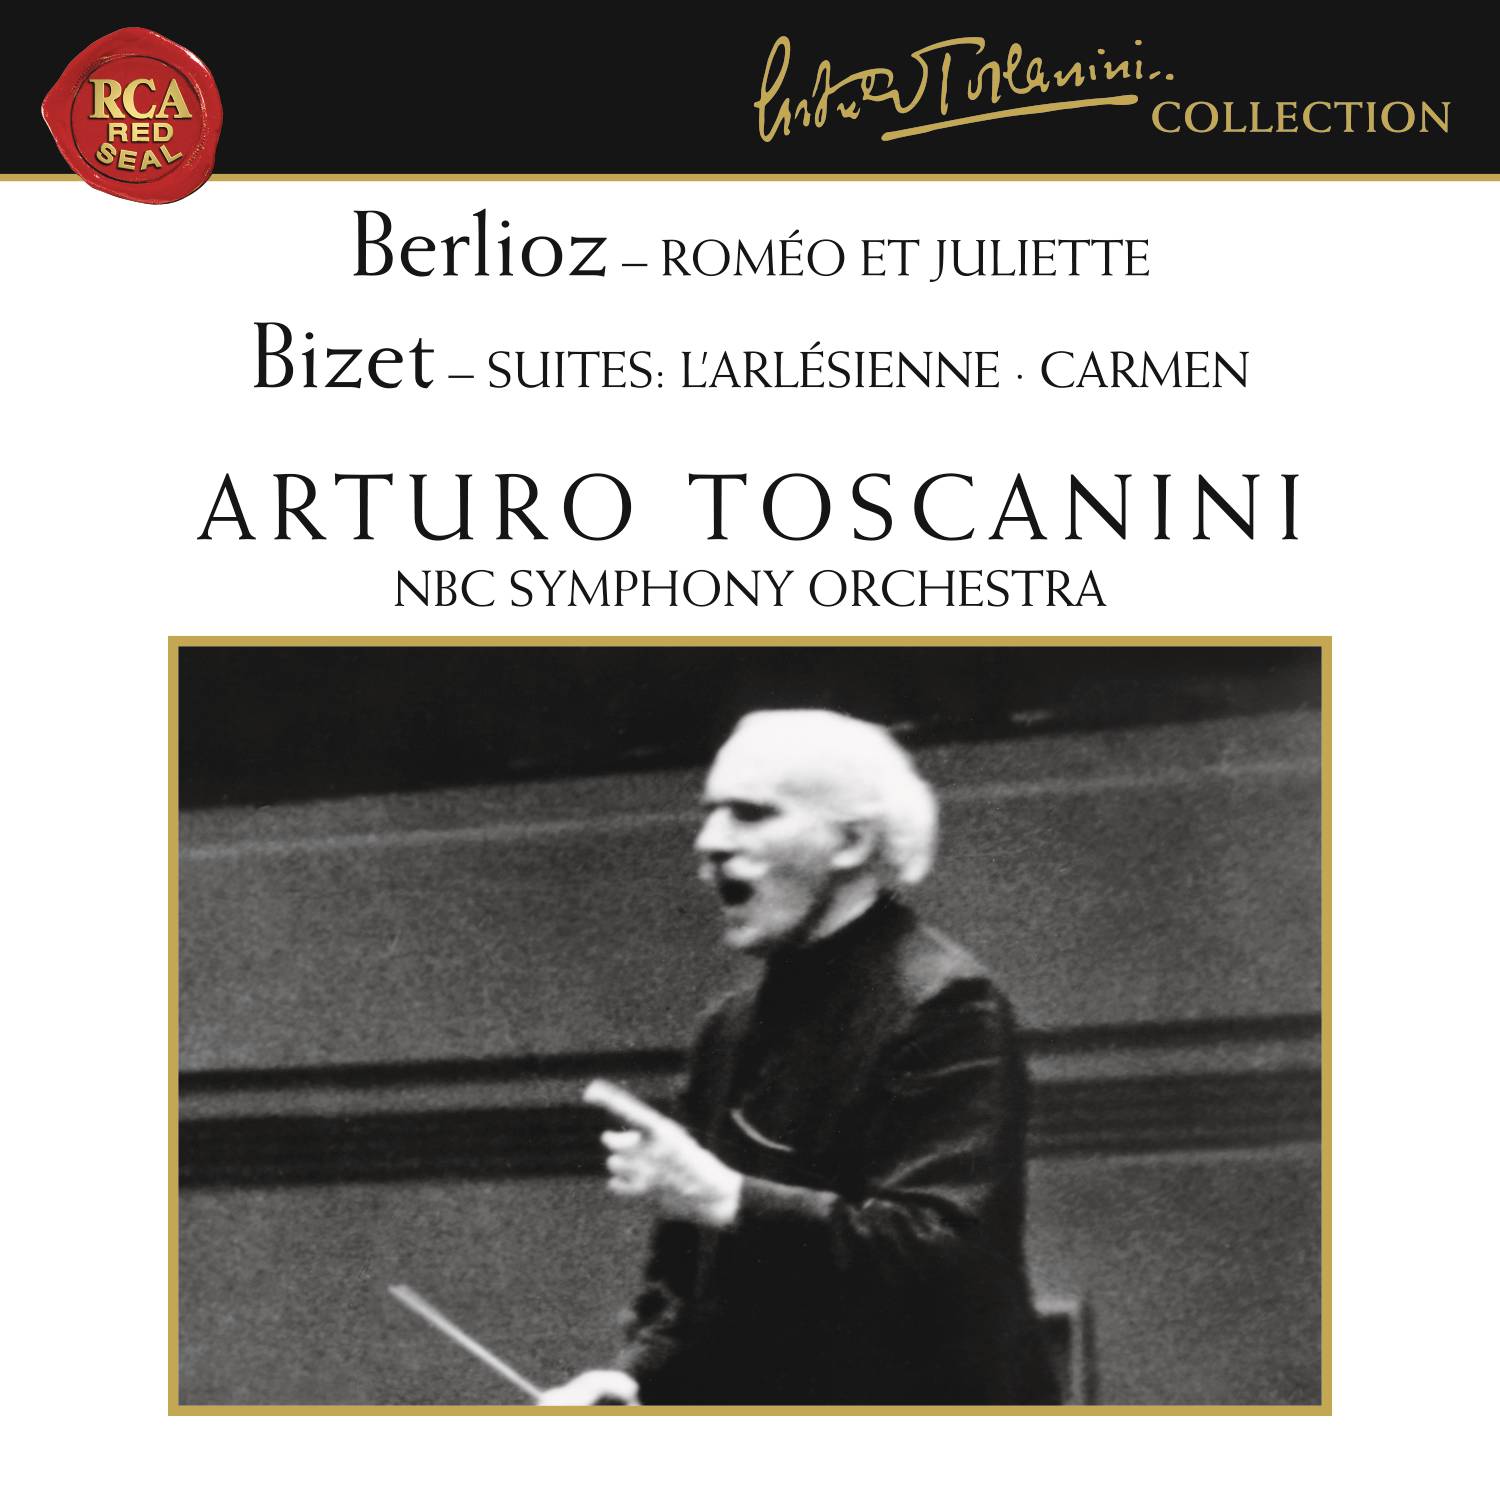 Berlioz: Rome o et Juliette, Op. 17  Bizet: L' Arle sienne Suite  Carmen Suite